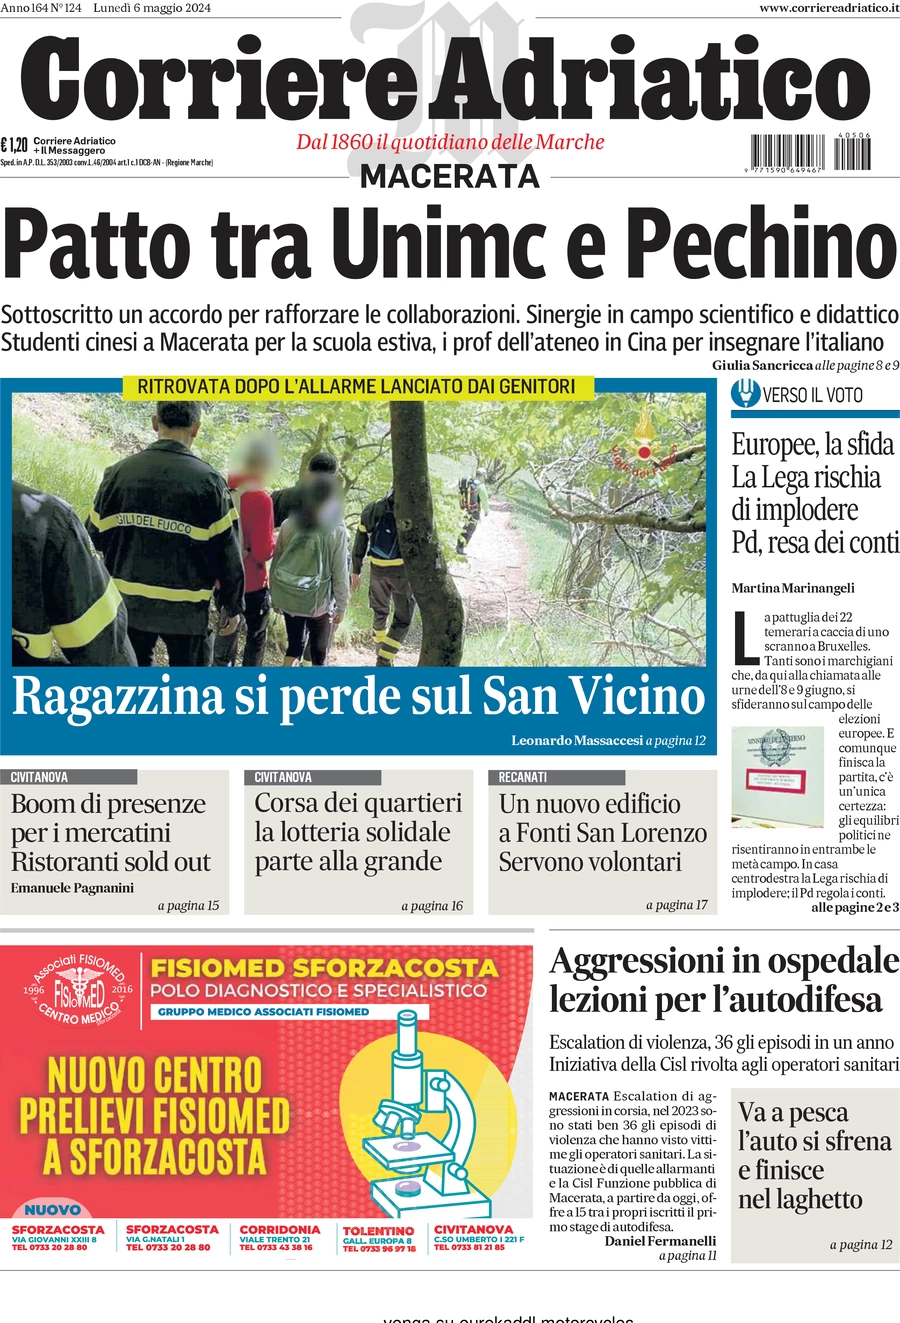 anteprima della prima pagina di Corriere Adriatico (Macerata)